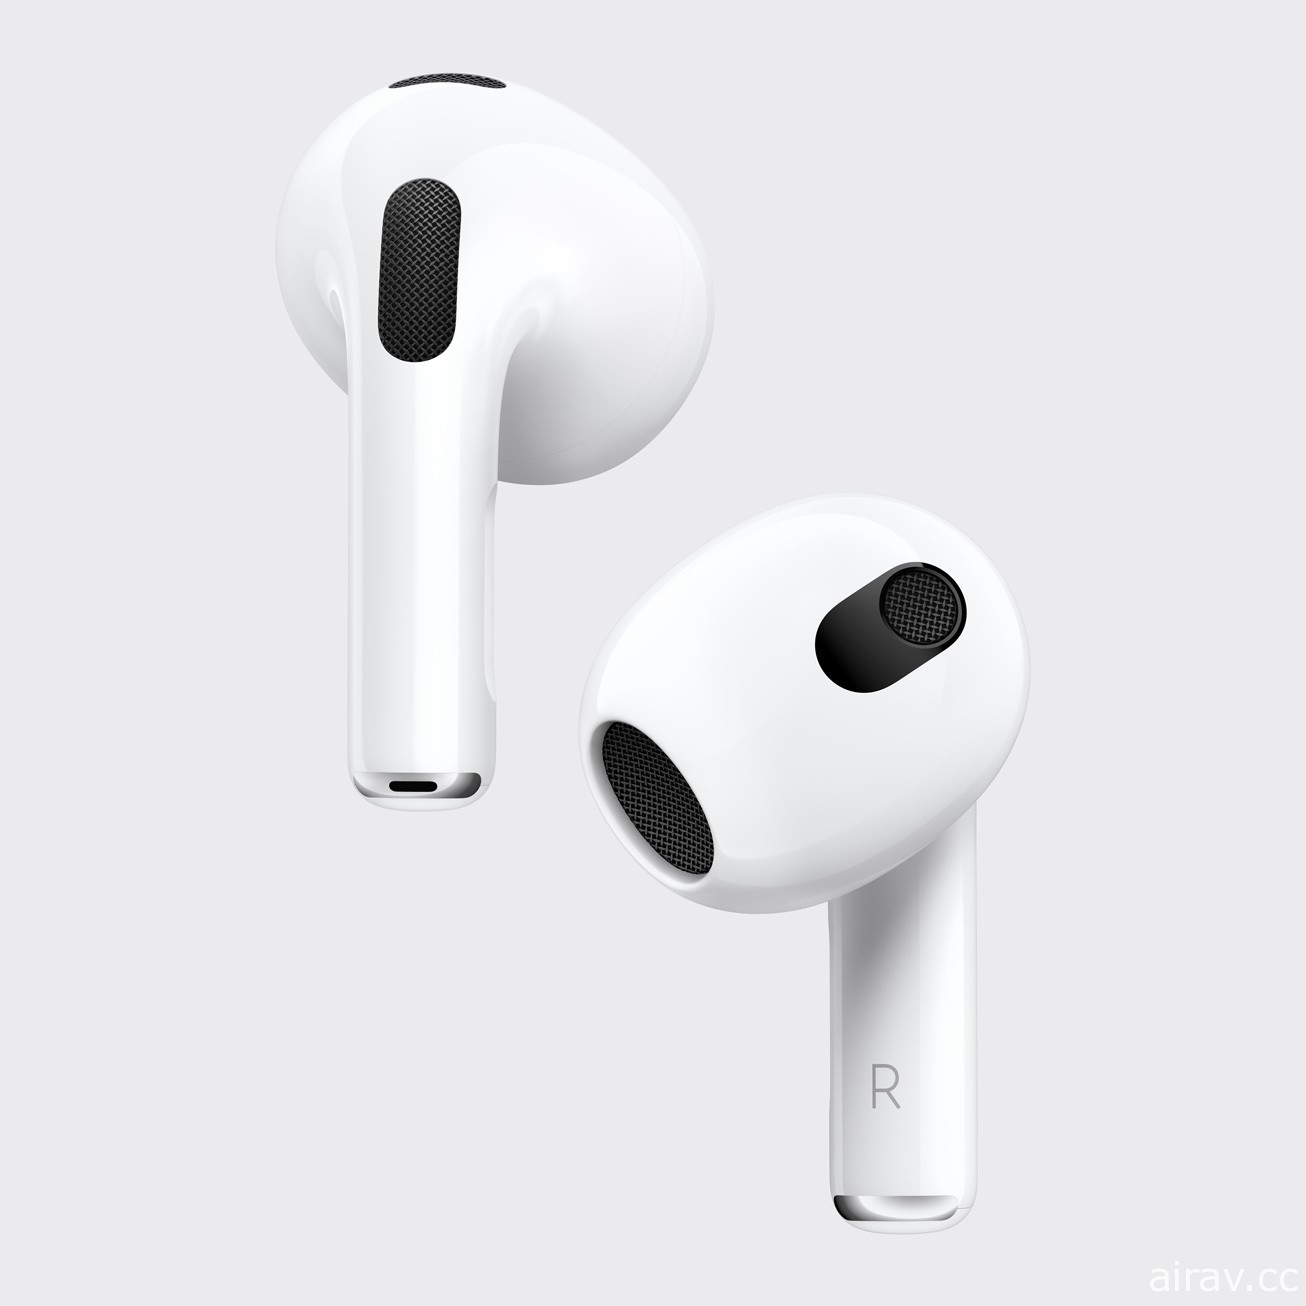 蘋果於發表會宣布新一代無線耳機 AirPods 登場 採用全新設計及更持久的續航力